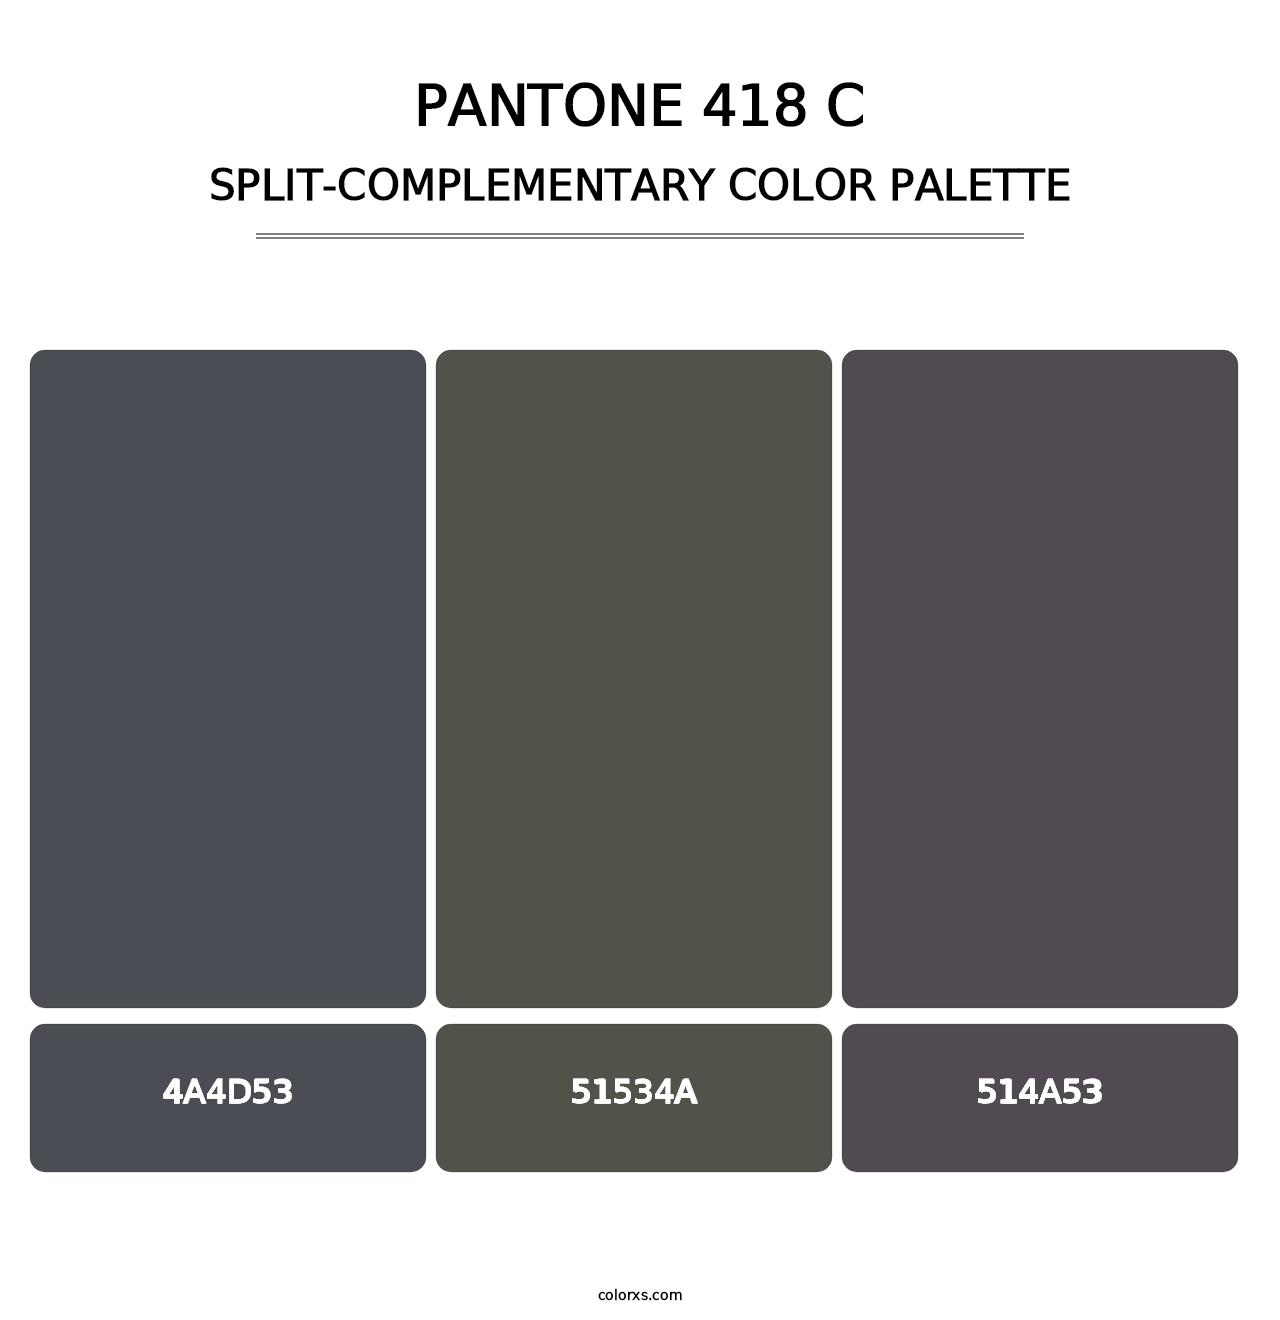 PANTONE 418 C - Split-Complementary Color Palette